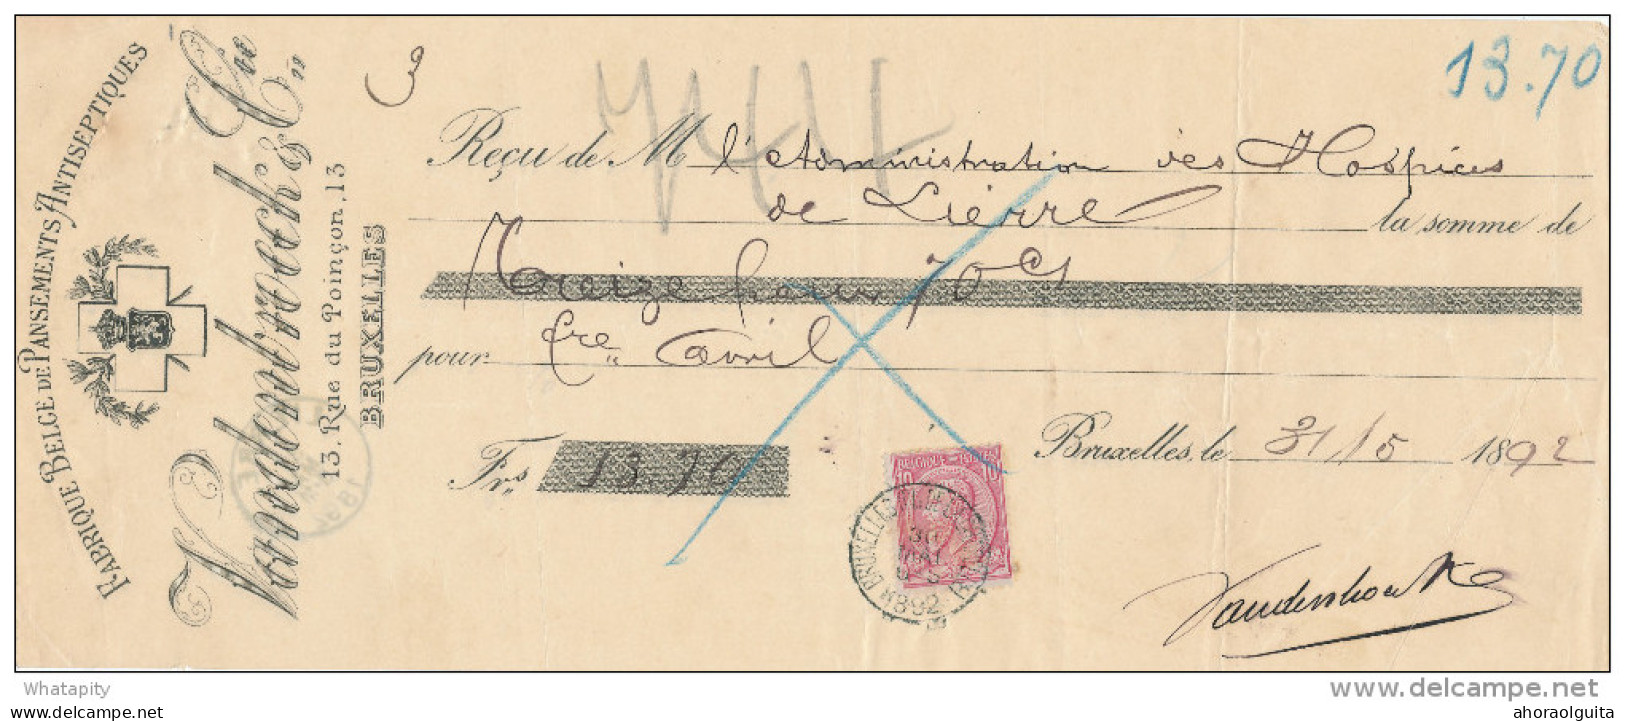 BELGIQUE - Document Financier Via Poste Belge 1892 - Pansements Antiseptiques Vandenbroeck à BRUXELLES  -- VV423 - Pharmacy